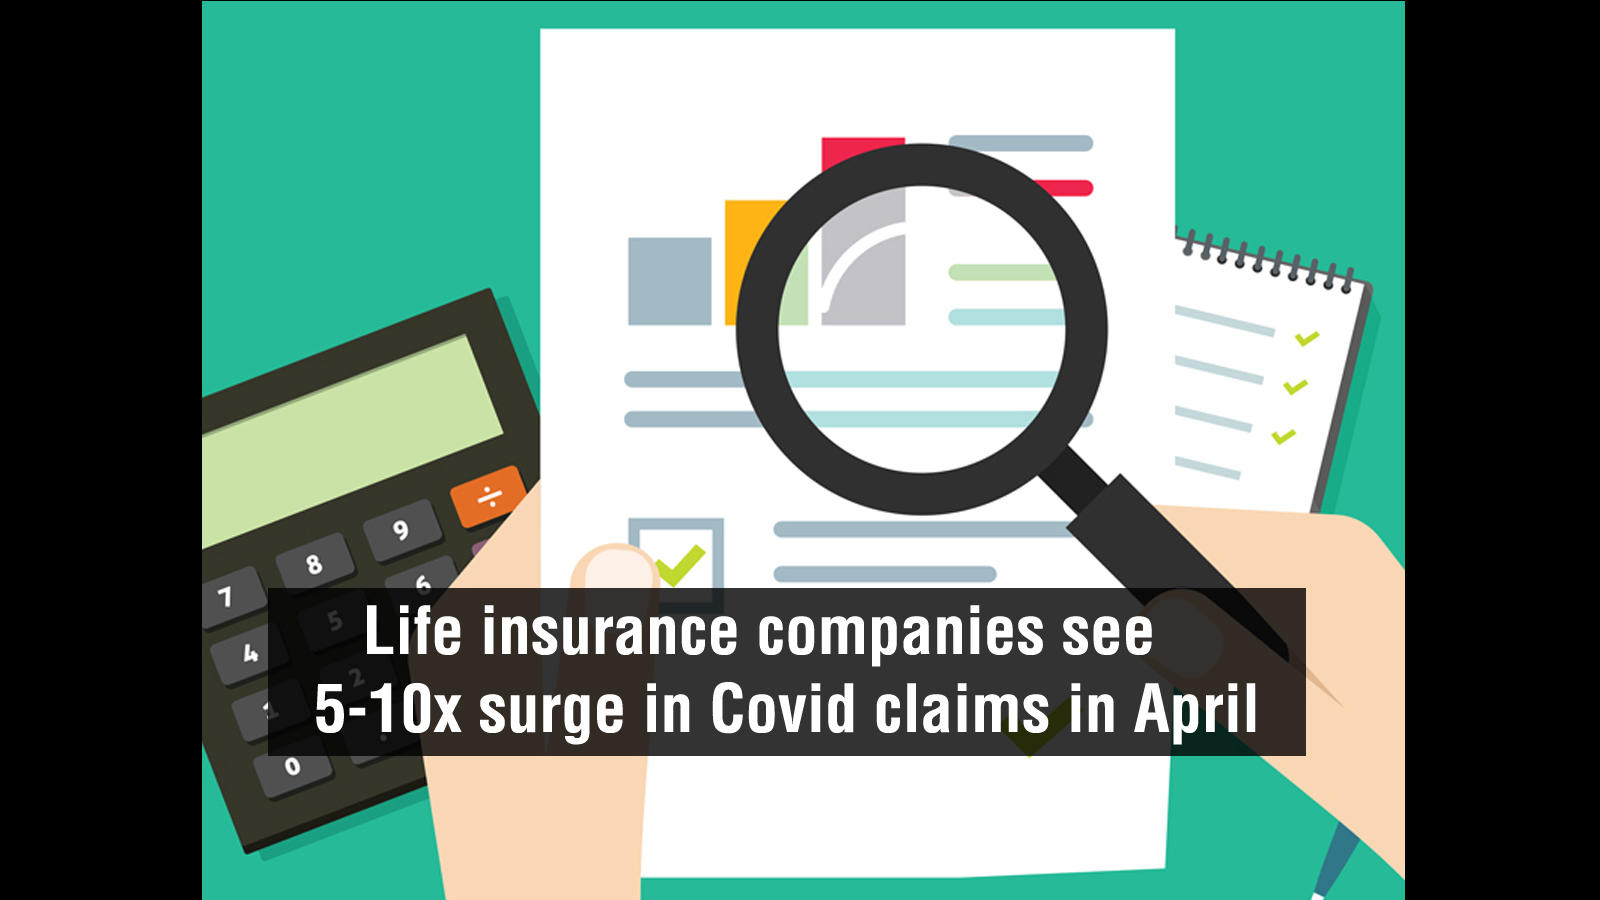  मृत्यु के दावे: जीवन बीमा कंपनियों ने अप्रैल में कोविड के दावों में 5-10 गुना वृद्धि देखी |  व्यापार - टाइम्स ऑफ इंडिया वीडियो
